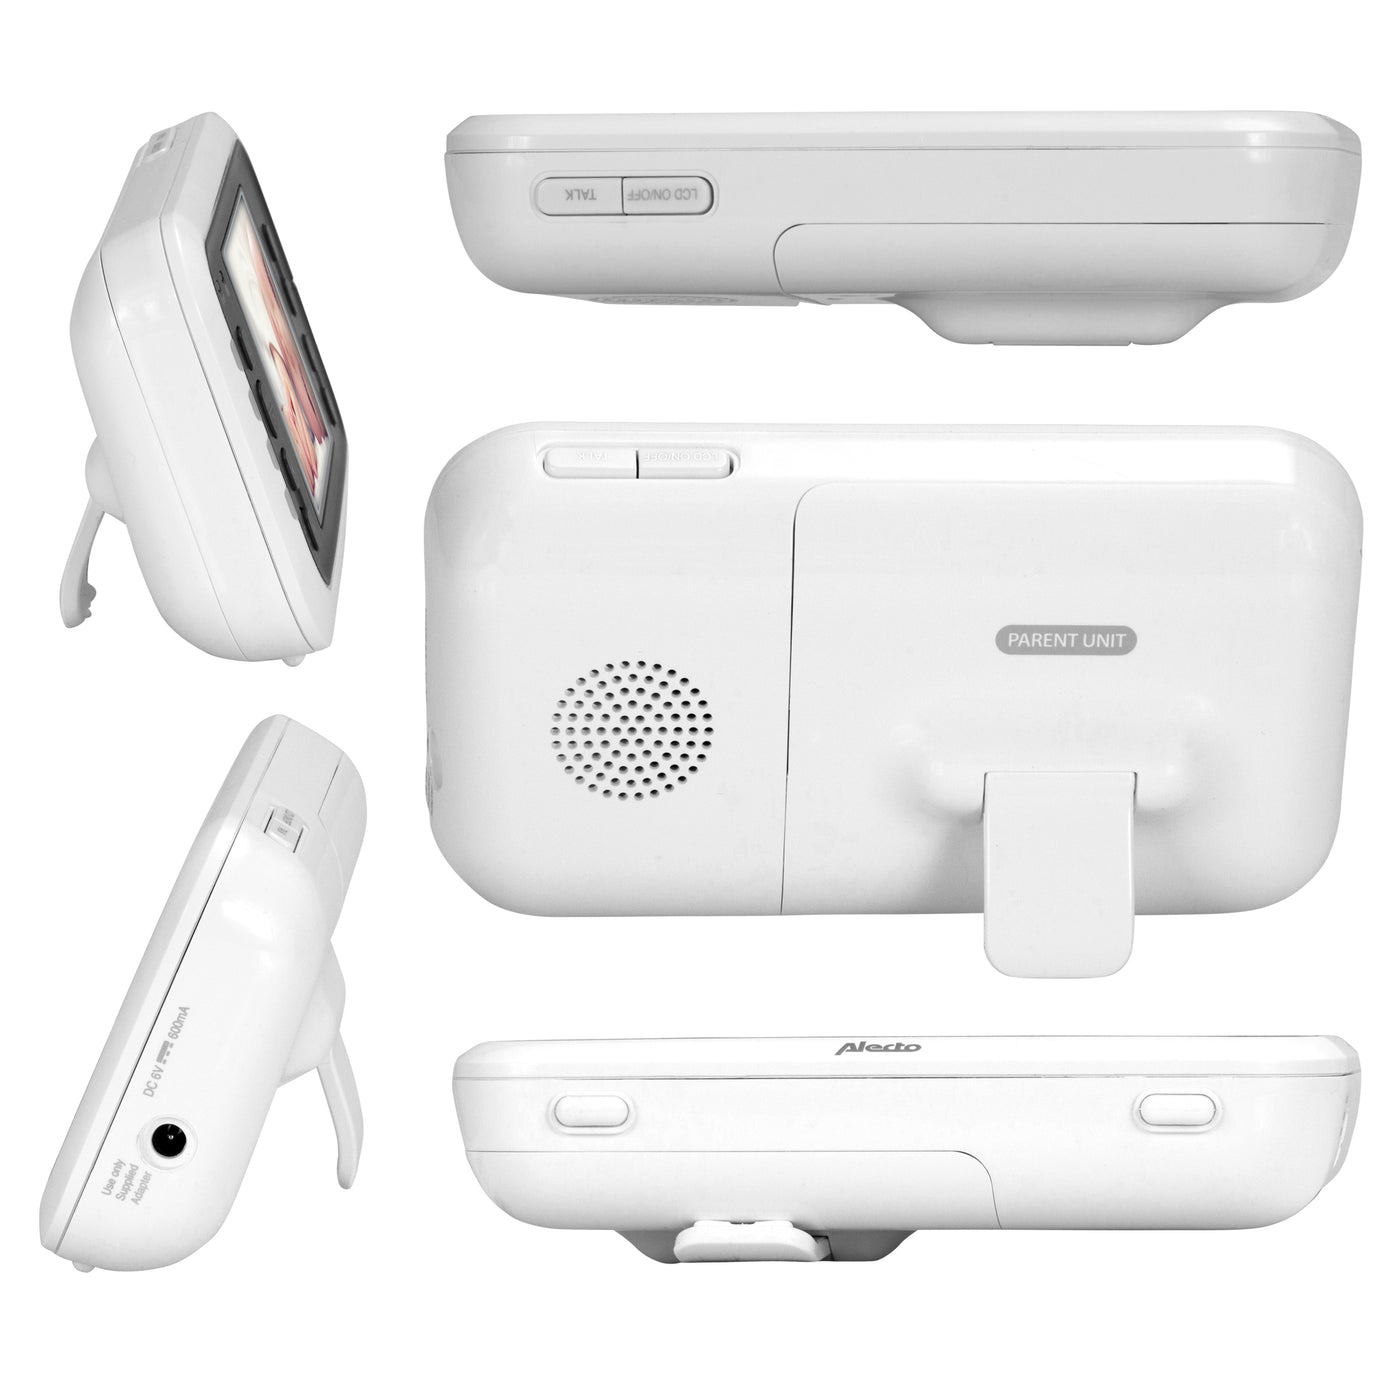 Alecto DVM-77 - Babyphone avec caméra et écran couleur 2.8", blanc/anthracite